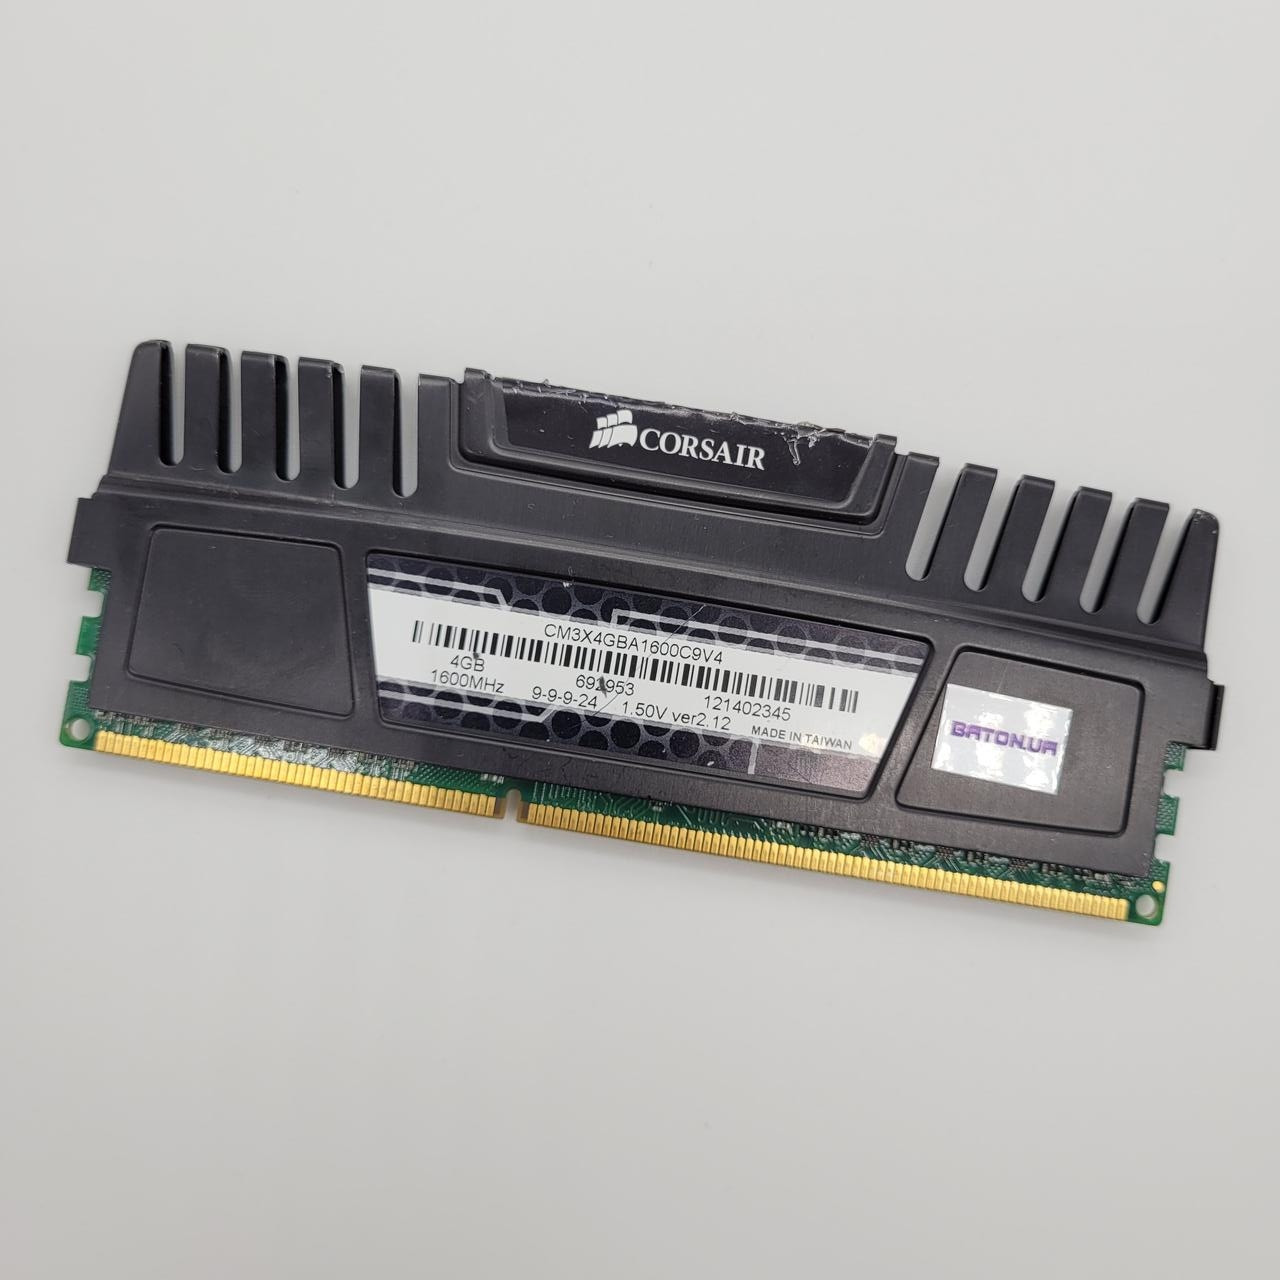 Ігрова оперативна пам'ять Corsair Vengeance DDR3 4Gb 1600MHz PC3 12800U 2R8 CL9 (CM3X4GBA1600C9V4) Б/У, фото 1